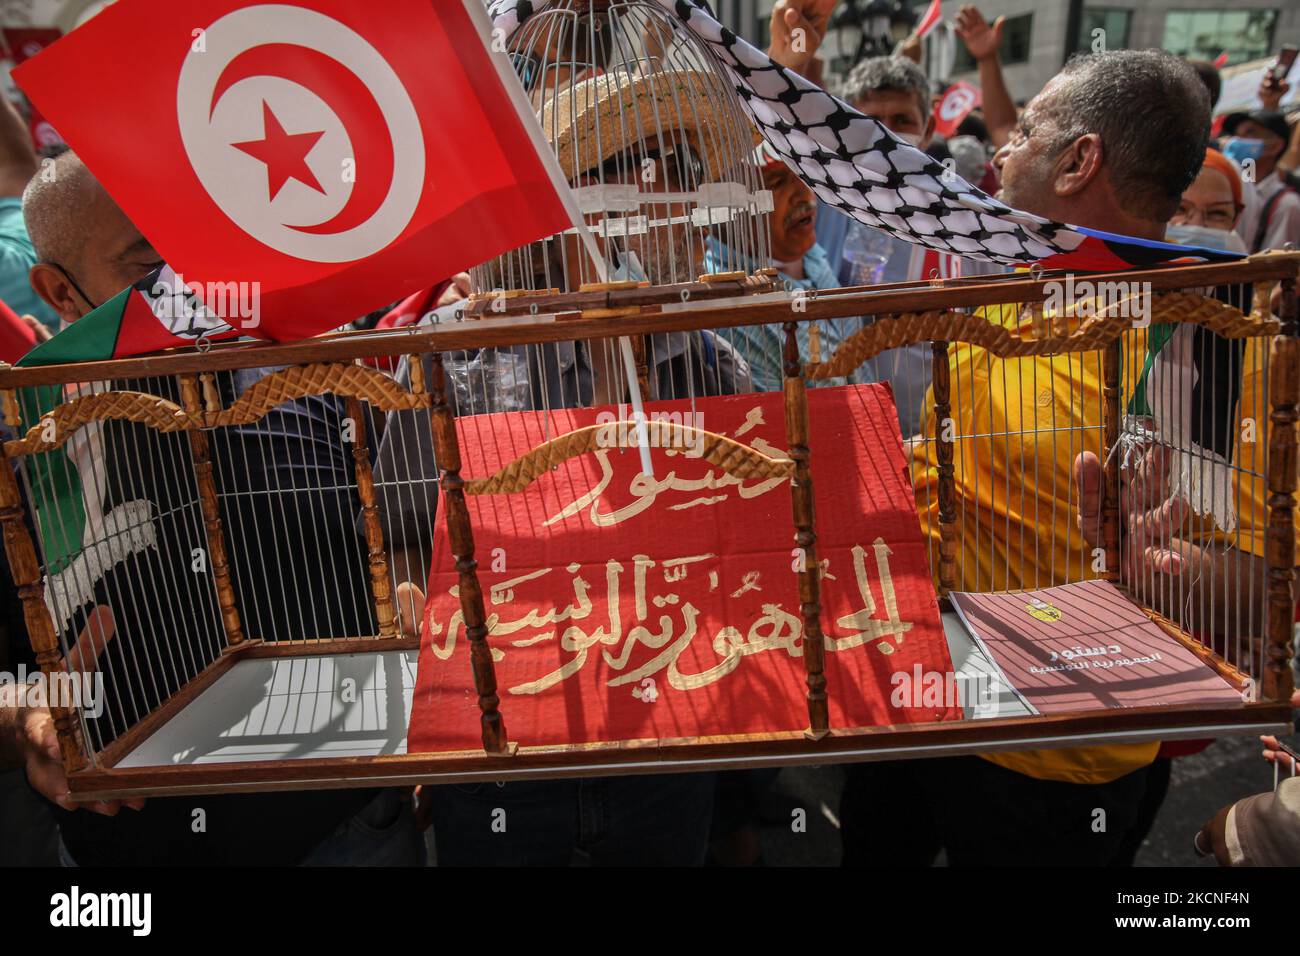 Ein Demonstranten hält einen Käfig mit einem Plakat, auf dem auf Arabisch die Verfassung der Republik Tunesien steht, während einer Demonstration, die am 26. September 2021 auf der Avenue Habib Bourguiba in Tunis, Tunesien, stattfand, um gegen das zu protestieren, was Tausende von Demonstranten einen Putsch nannten, Unter Bezugnahme auf die neuen Sondermaßnahmen, die vom Präsidenten Tunesiens erlassen und im Amtsblatt veröffentlicht wurden, verwies Kais Saied. Ein paar Tage zuvor kündigte Kais Saied die Fortsetzung des Einfrierens des Parlaments und die Verkündung außergewöhnlicher Maßnahmen für die Ausübung der gesetzgebenden Gewalt und die von Exekutive an. H Stockfoto